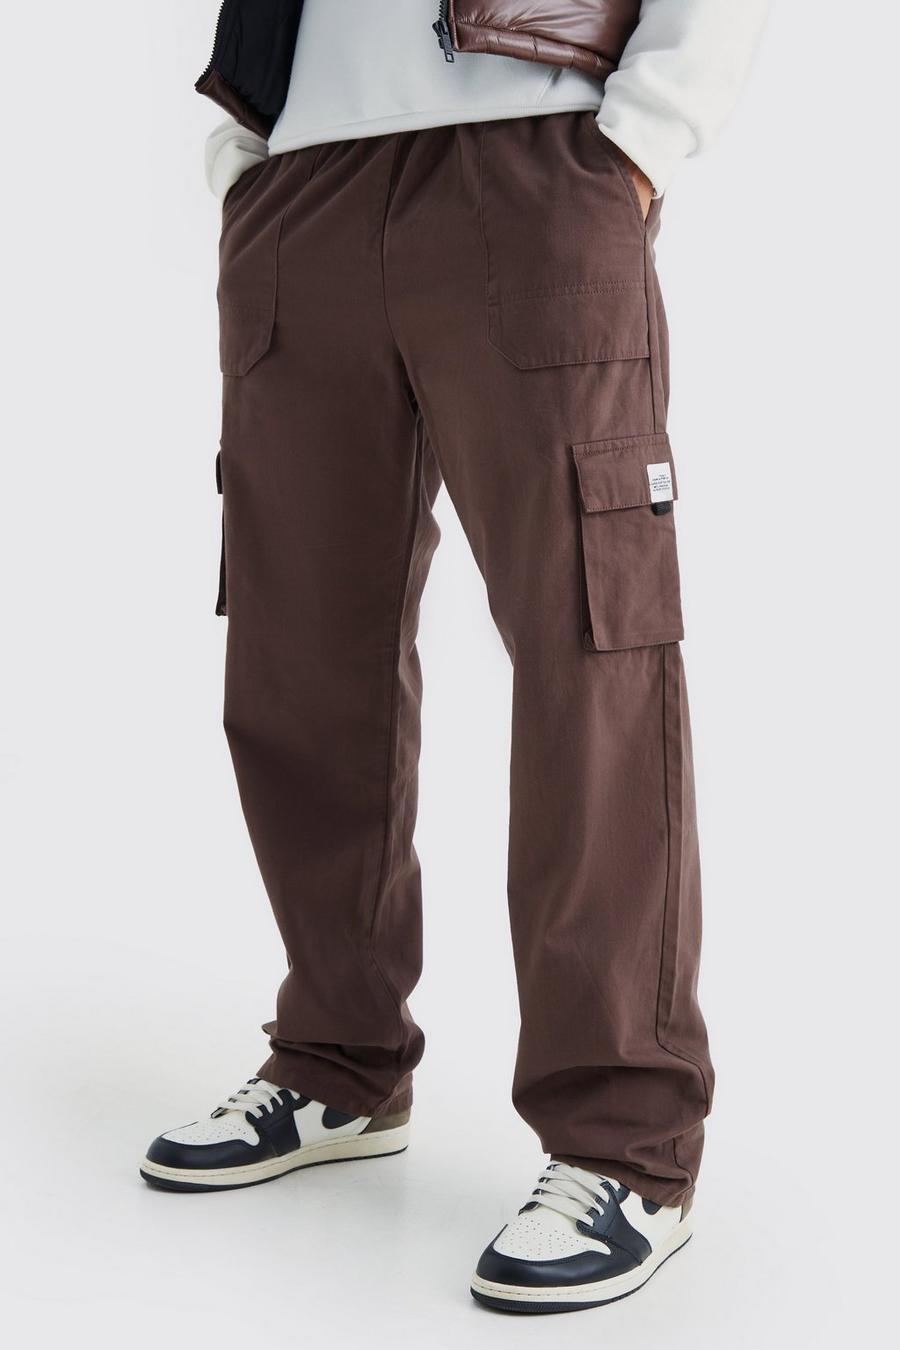 Pantalón deportivo Tall cargo holgado con cintura elástica y hebilla, Chocolate